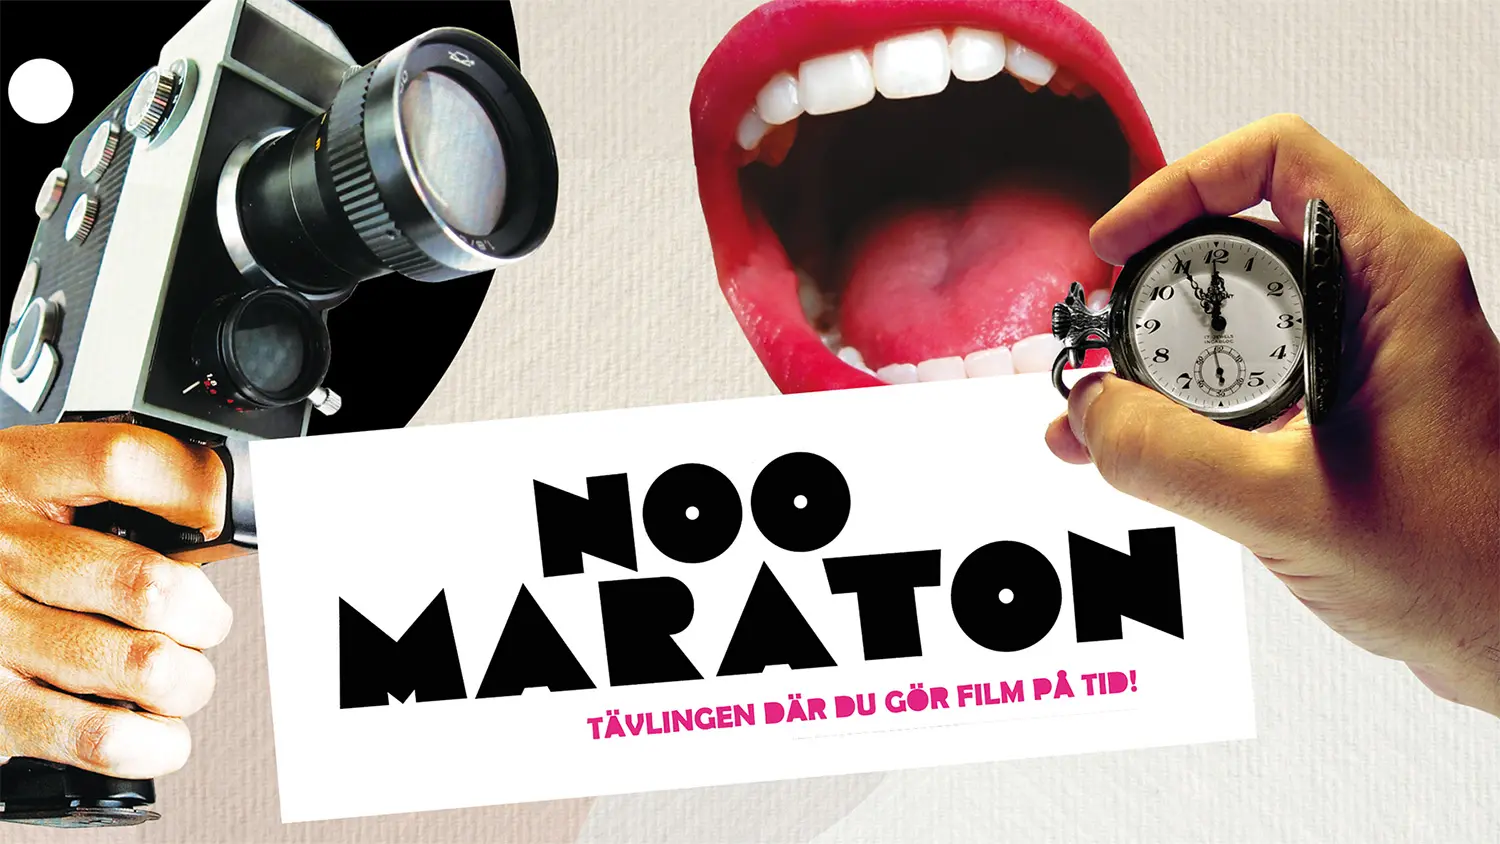 Kollage med äldre filmkamera, tidtagarur samt en mun och en textruta med texten "Noo Maraton Tävlingen där du gör film på tid".